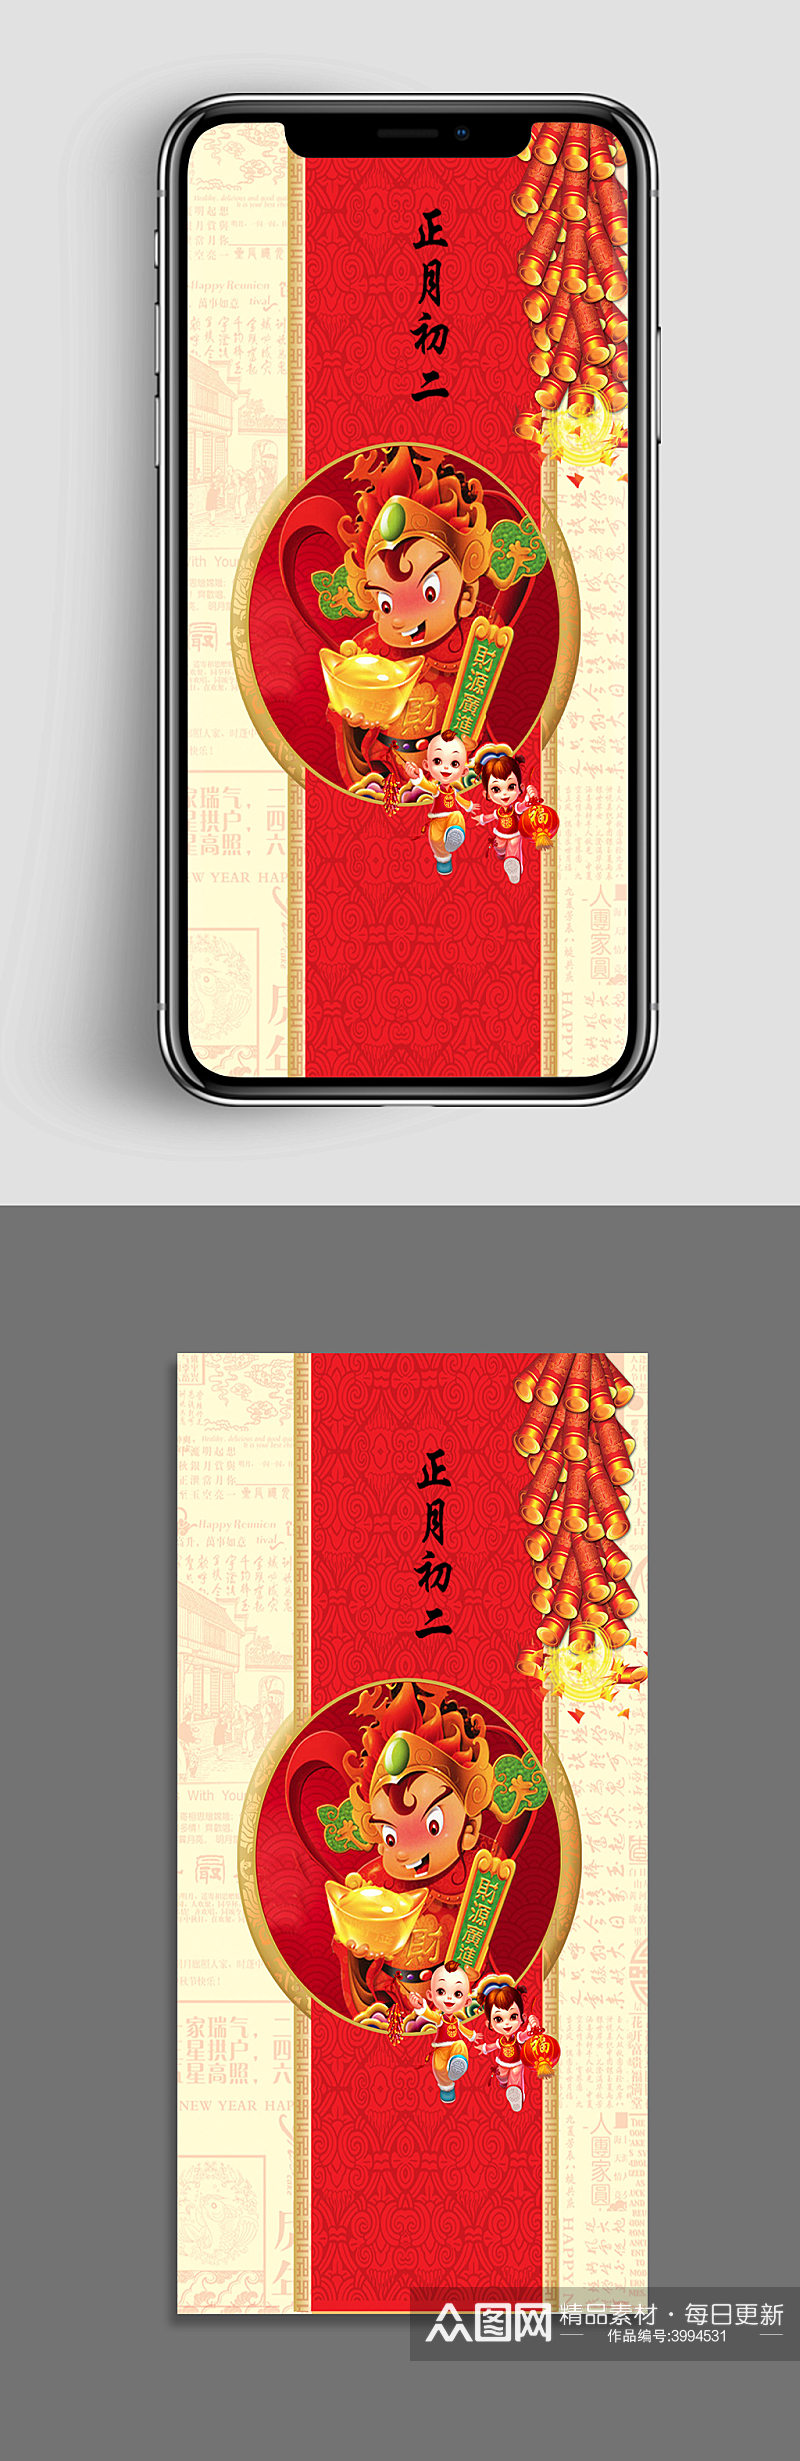 新年春节节日大年初二节日手机闪屏海报素材